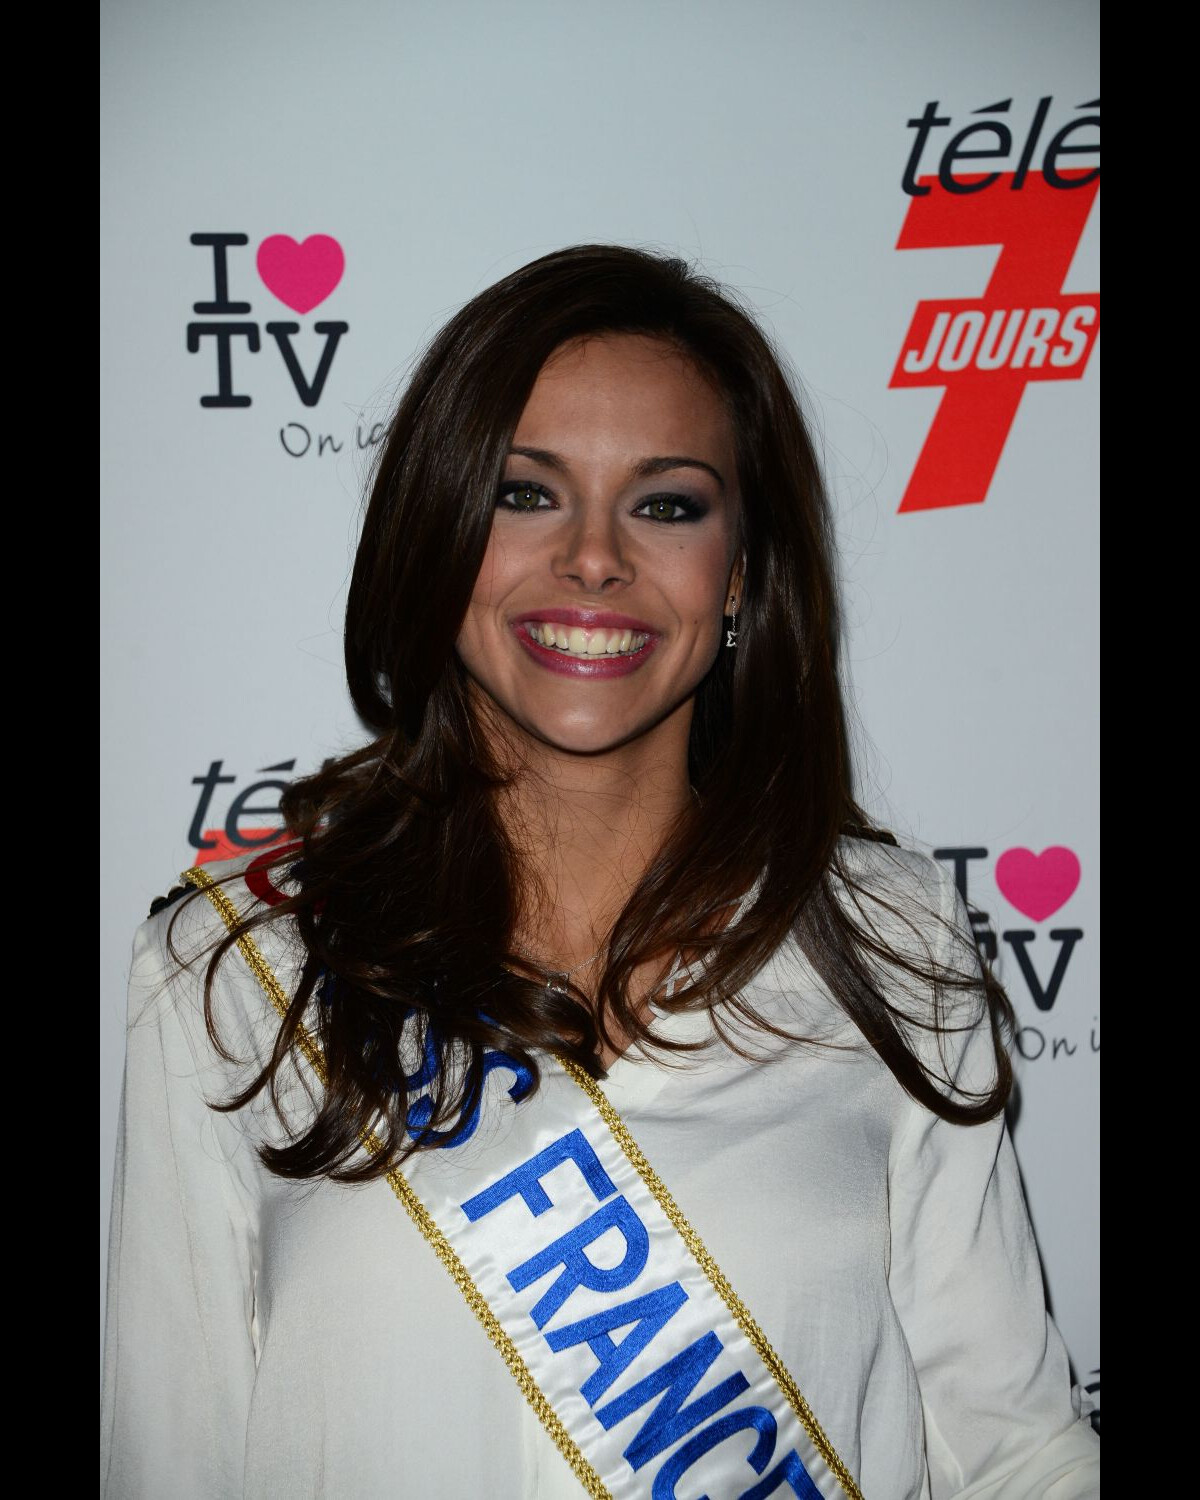 Photo Marine Lorphelin élue Miss France 2013 à Paris Le 12 Décembre 2012 Purepeople